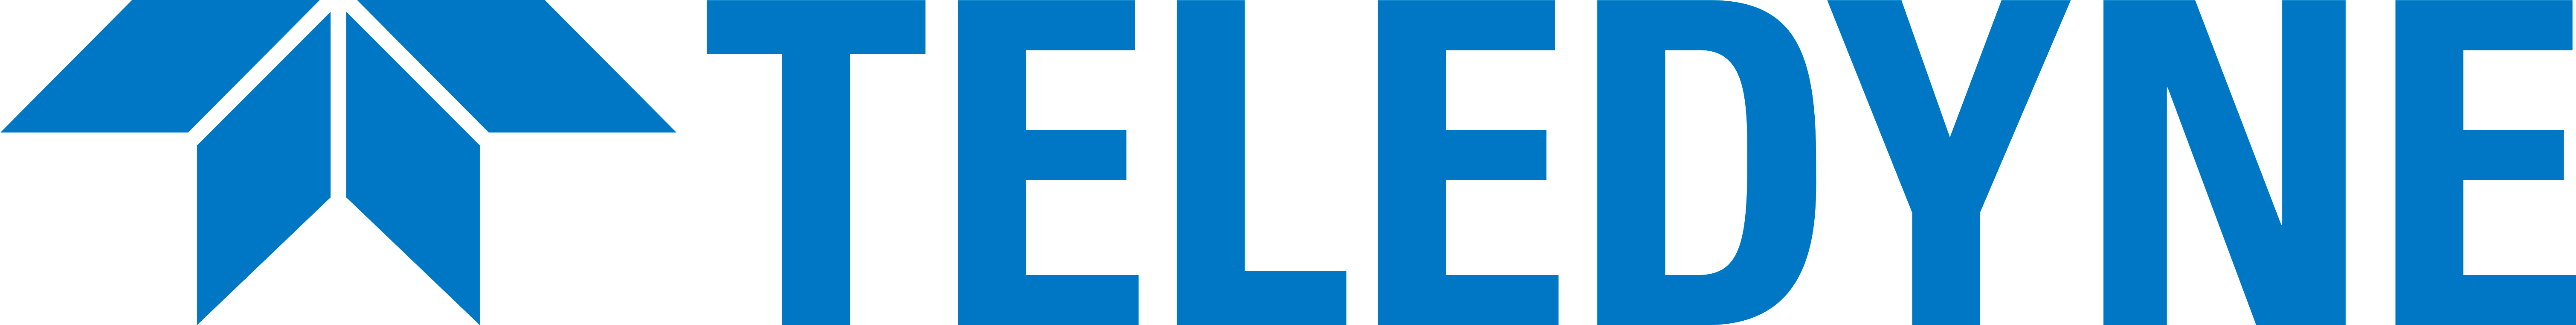 Teledyne RISI, Inc. logo